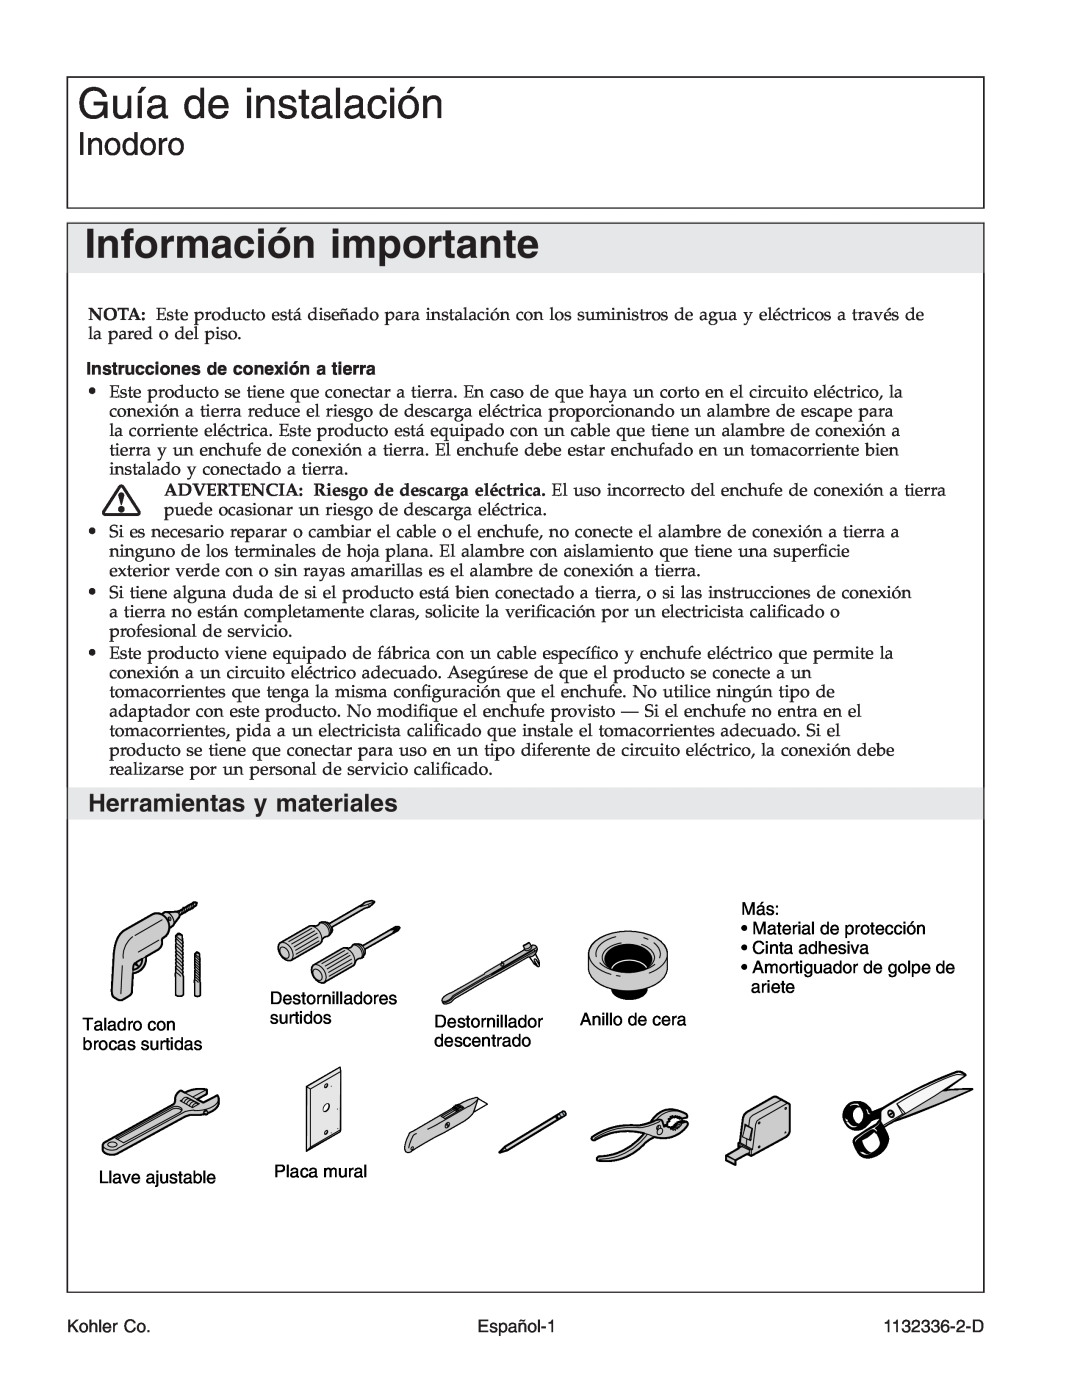 Kohler K-3900 manual Guía de instalación, Información importante, Inodoro, Herramientas y materiales, Español-1, Kohler Co 